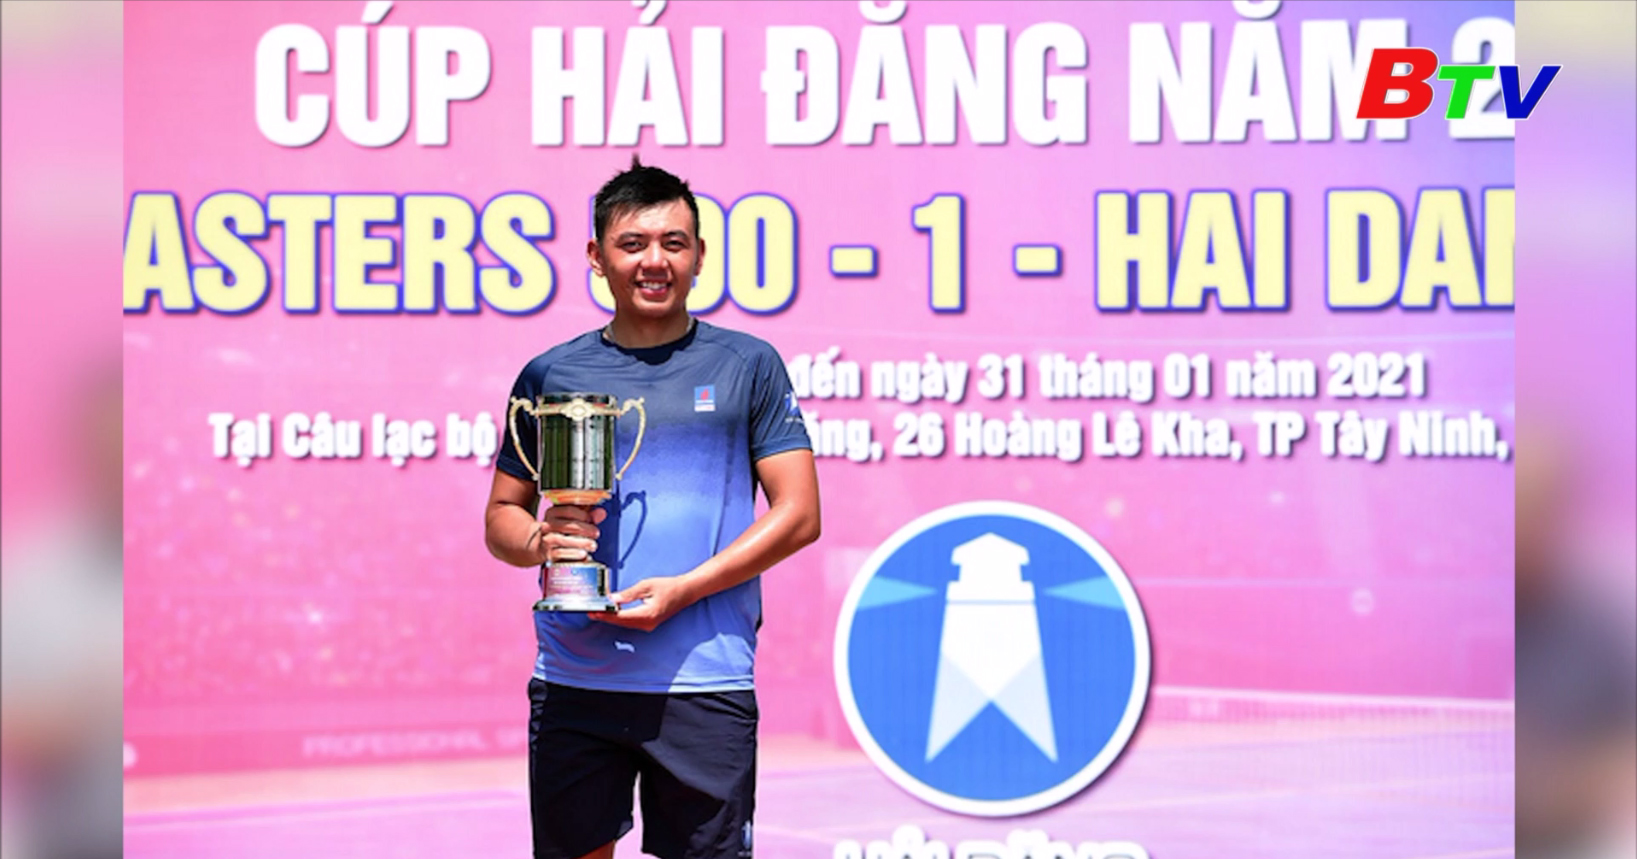 Tay vợt Lý Hoàng Nam lập cú đúp vô địch VTF Masters 500 lần 1 năm 2021